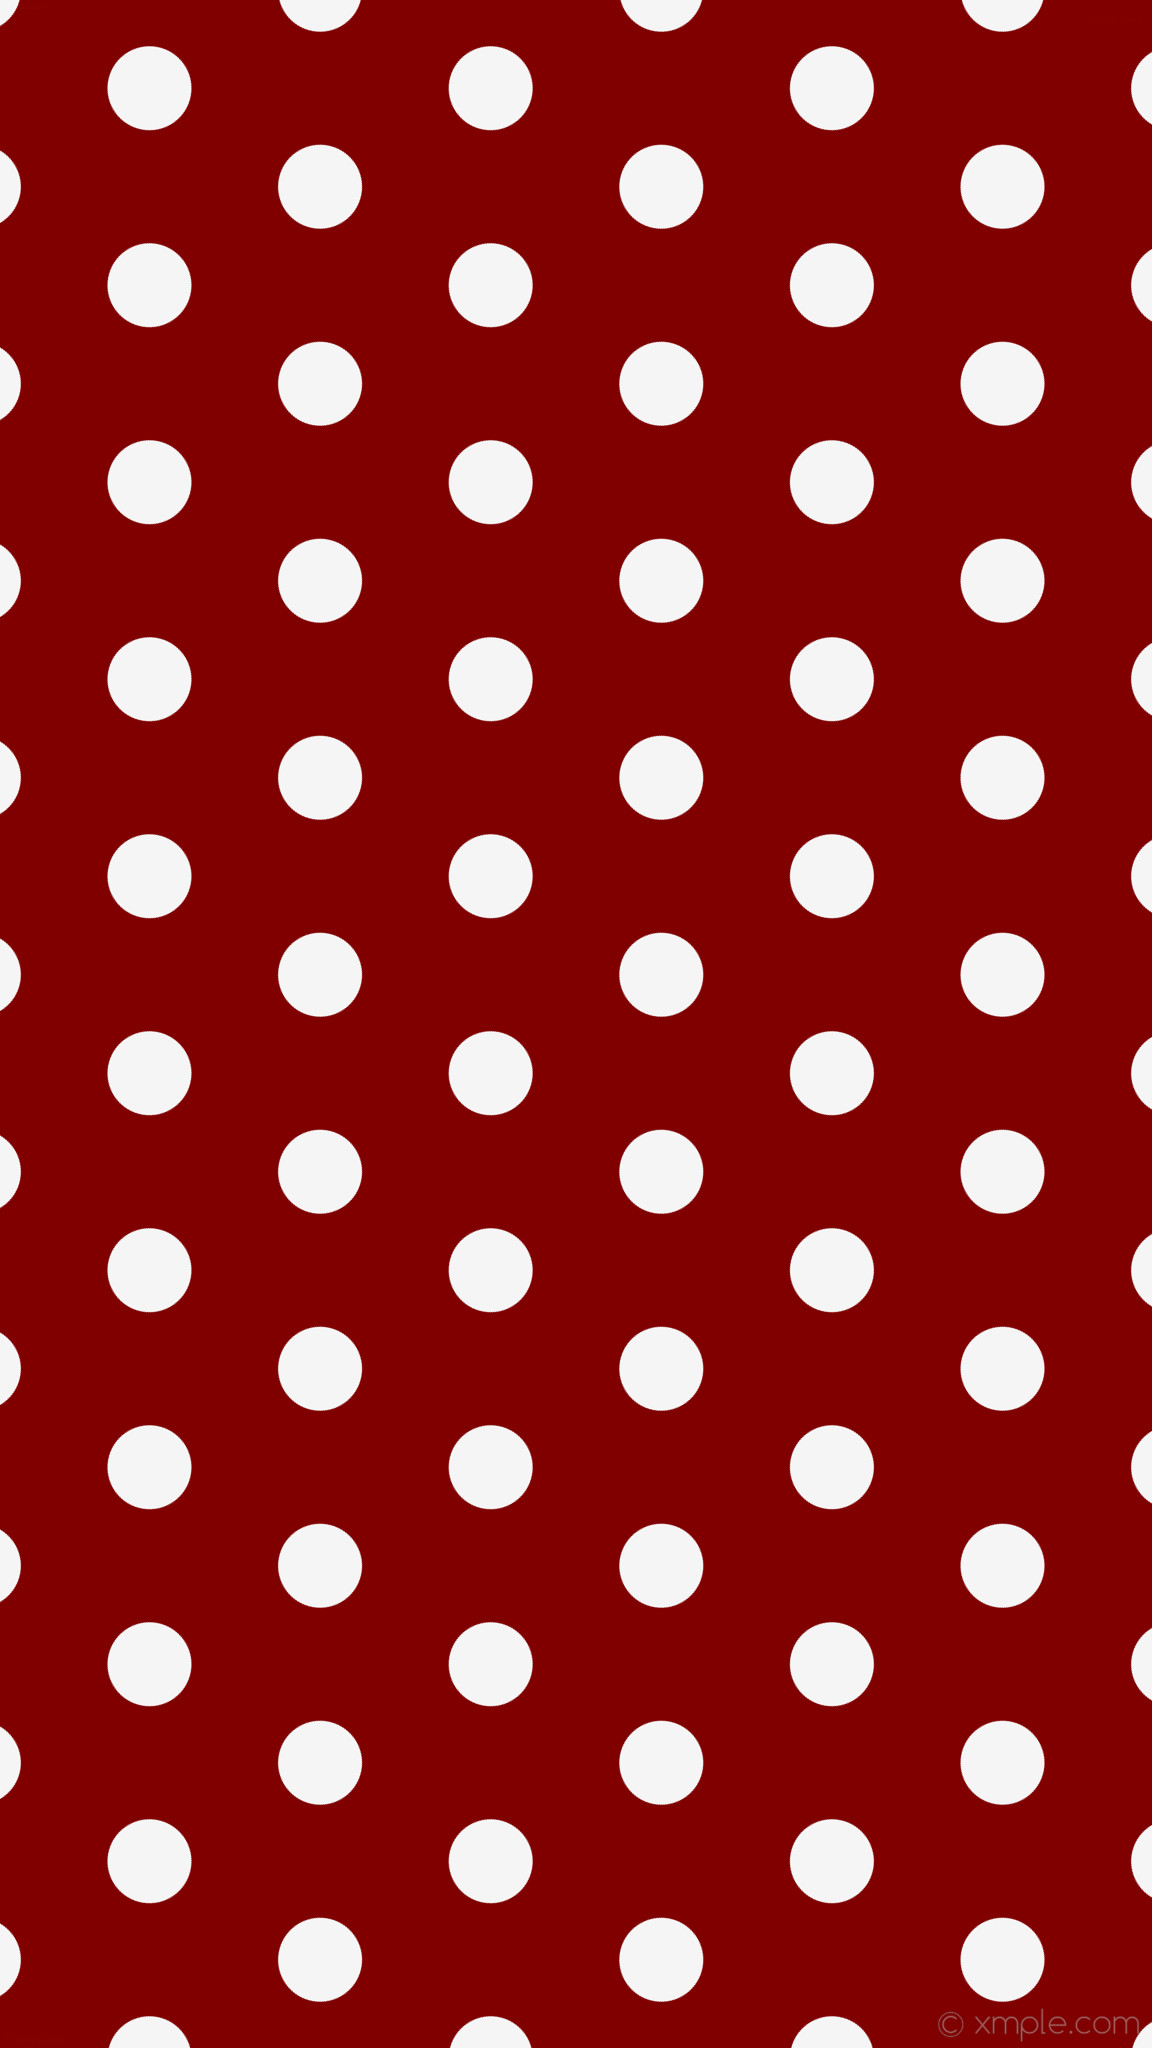 1152x2048 wallpaper dots brown white polka hexagon maroon white smoke #800000 #f5f5f5  diagonal 30Â°